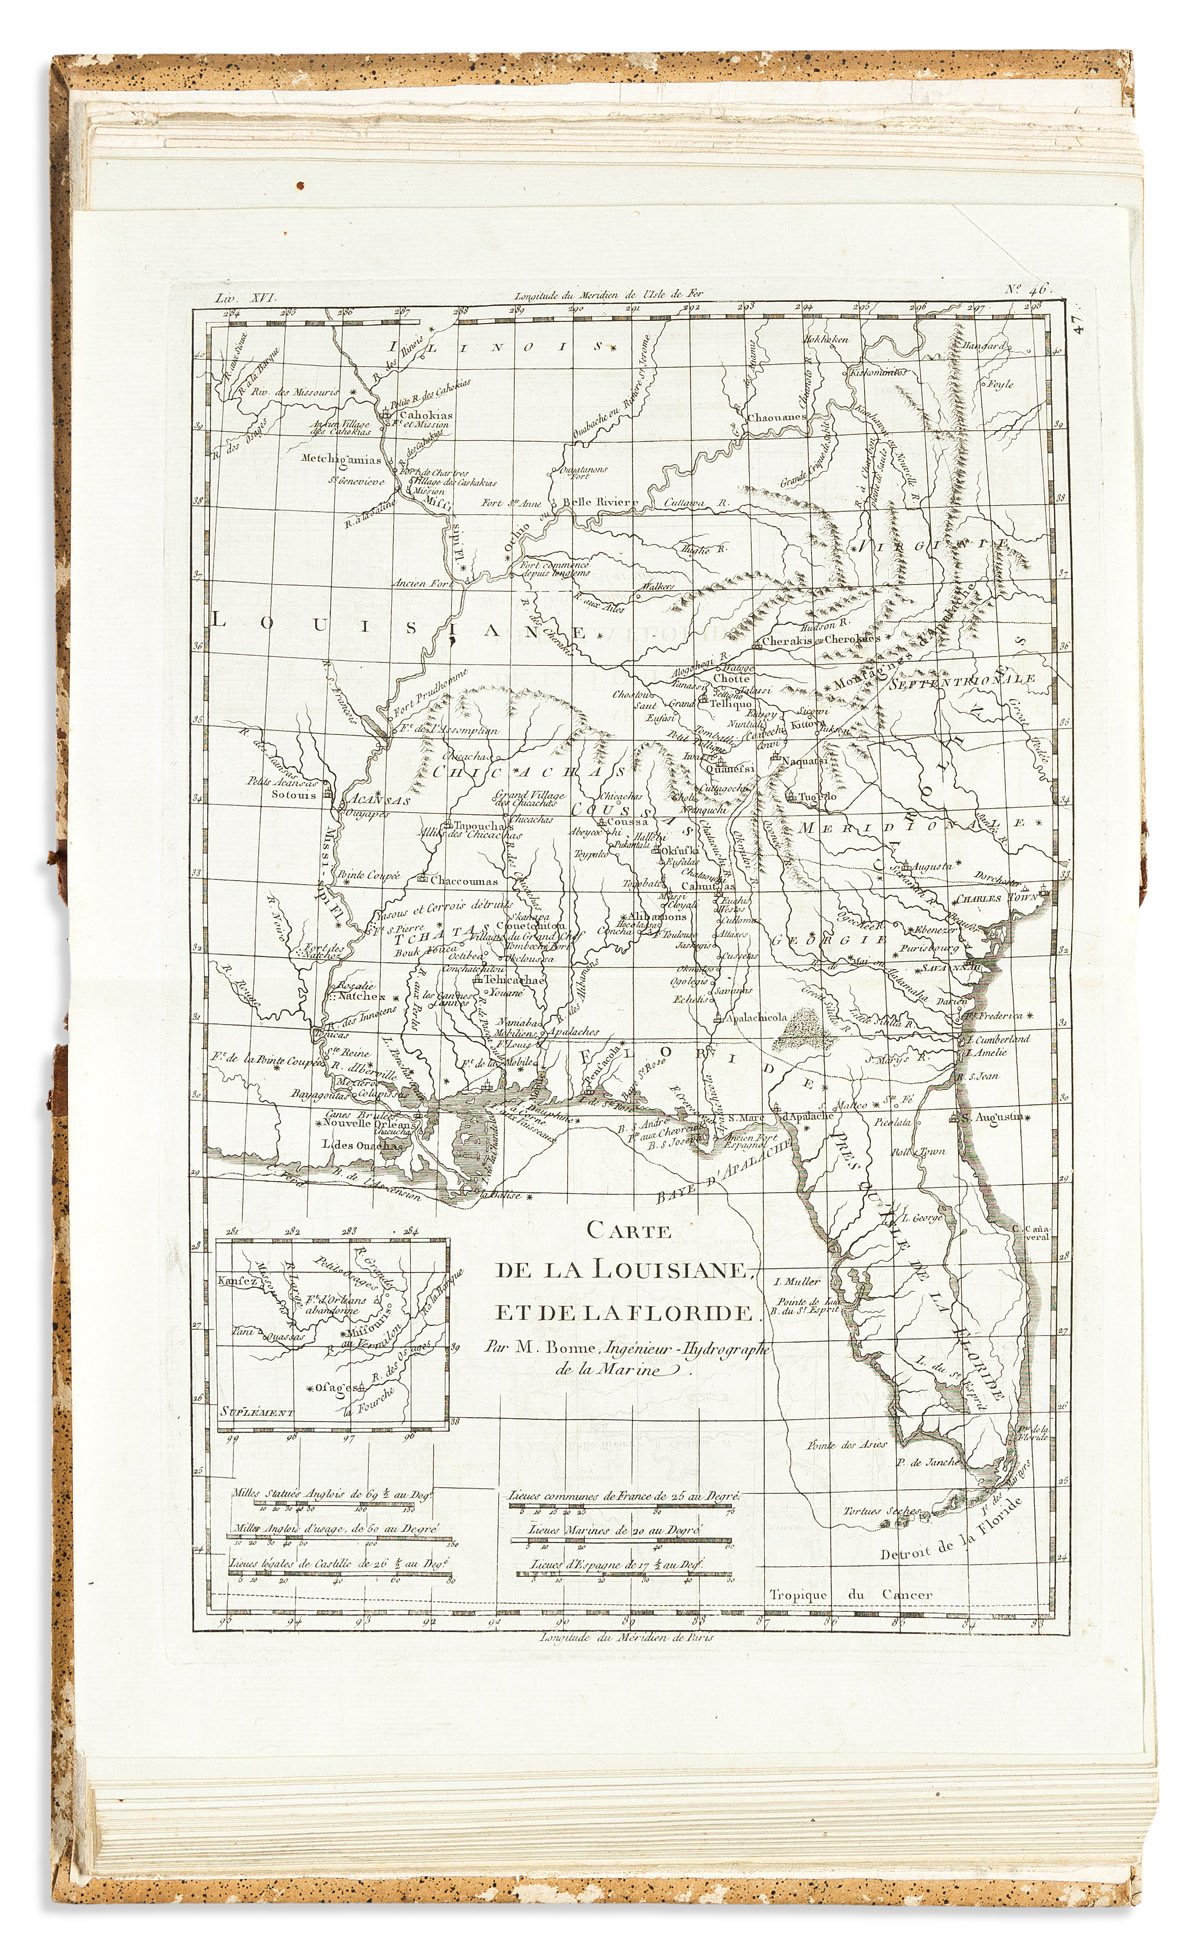 BONNE, RIGOBERT; and GUILLAUME THOMAS FRANÇOIS RAYNAL. Atlas de Toutes les Parties Connues du Globe Terrestre.